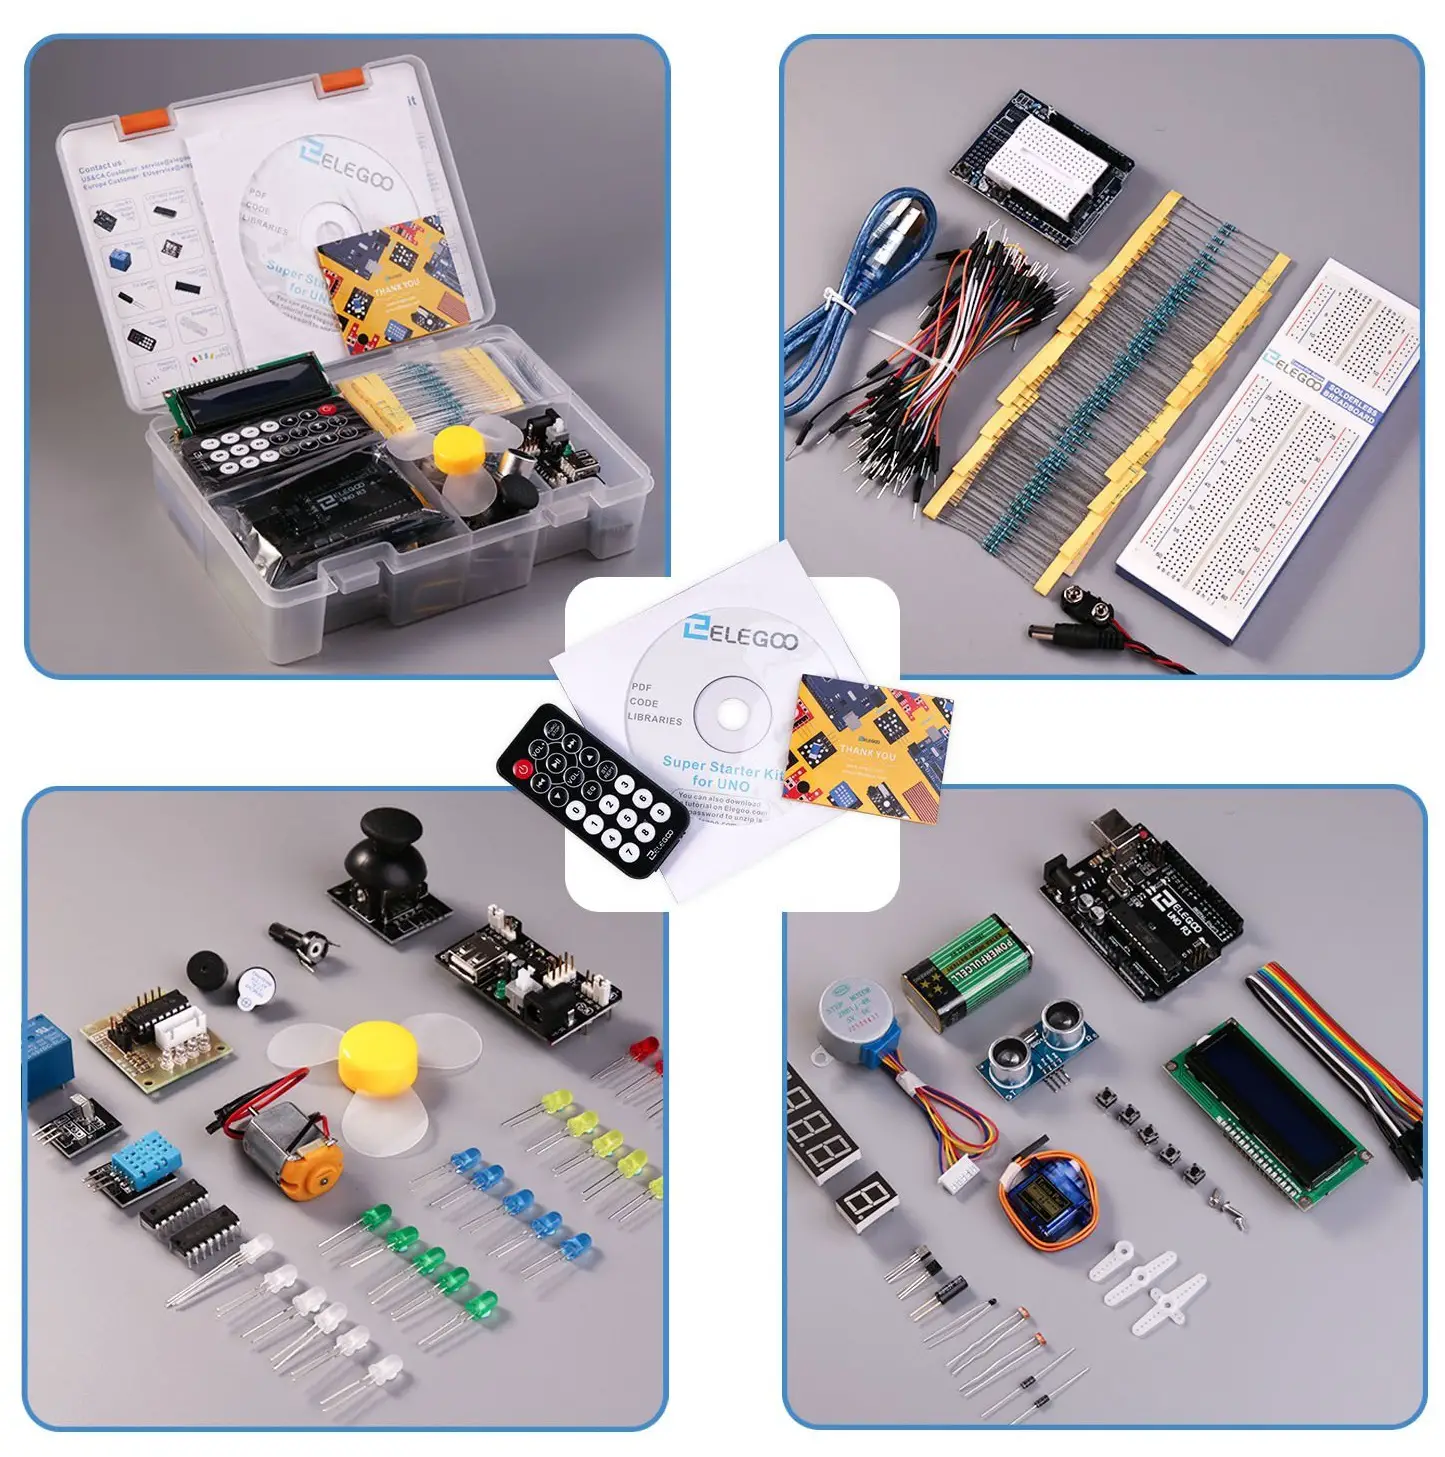 8 Best Arduino Starter Kit for Beginner - Arduino UNO R3 Kit, Components